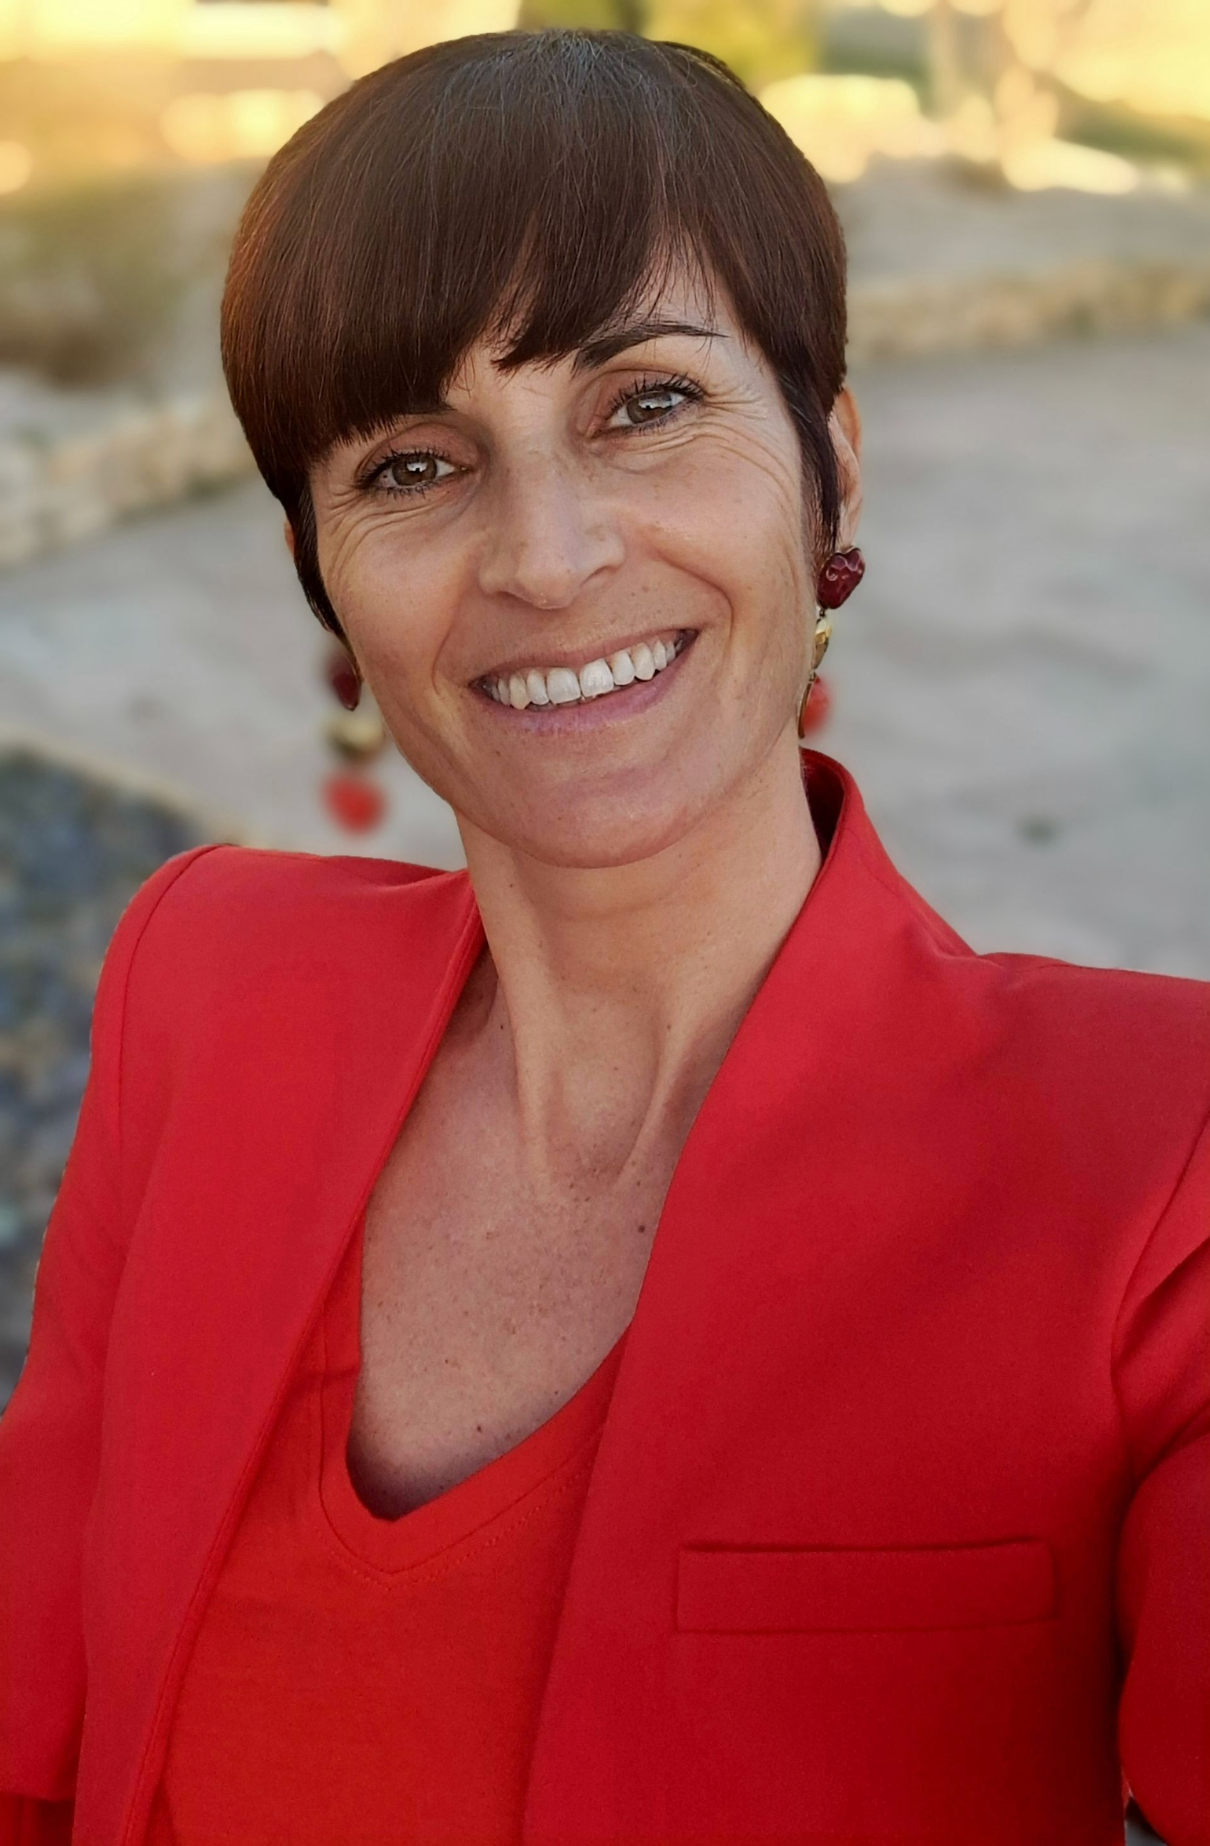 Une femme portant une veste rouge et des boucles d'oreilles sourit à la caméra.